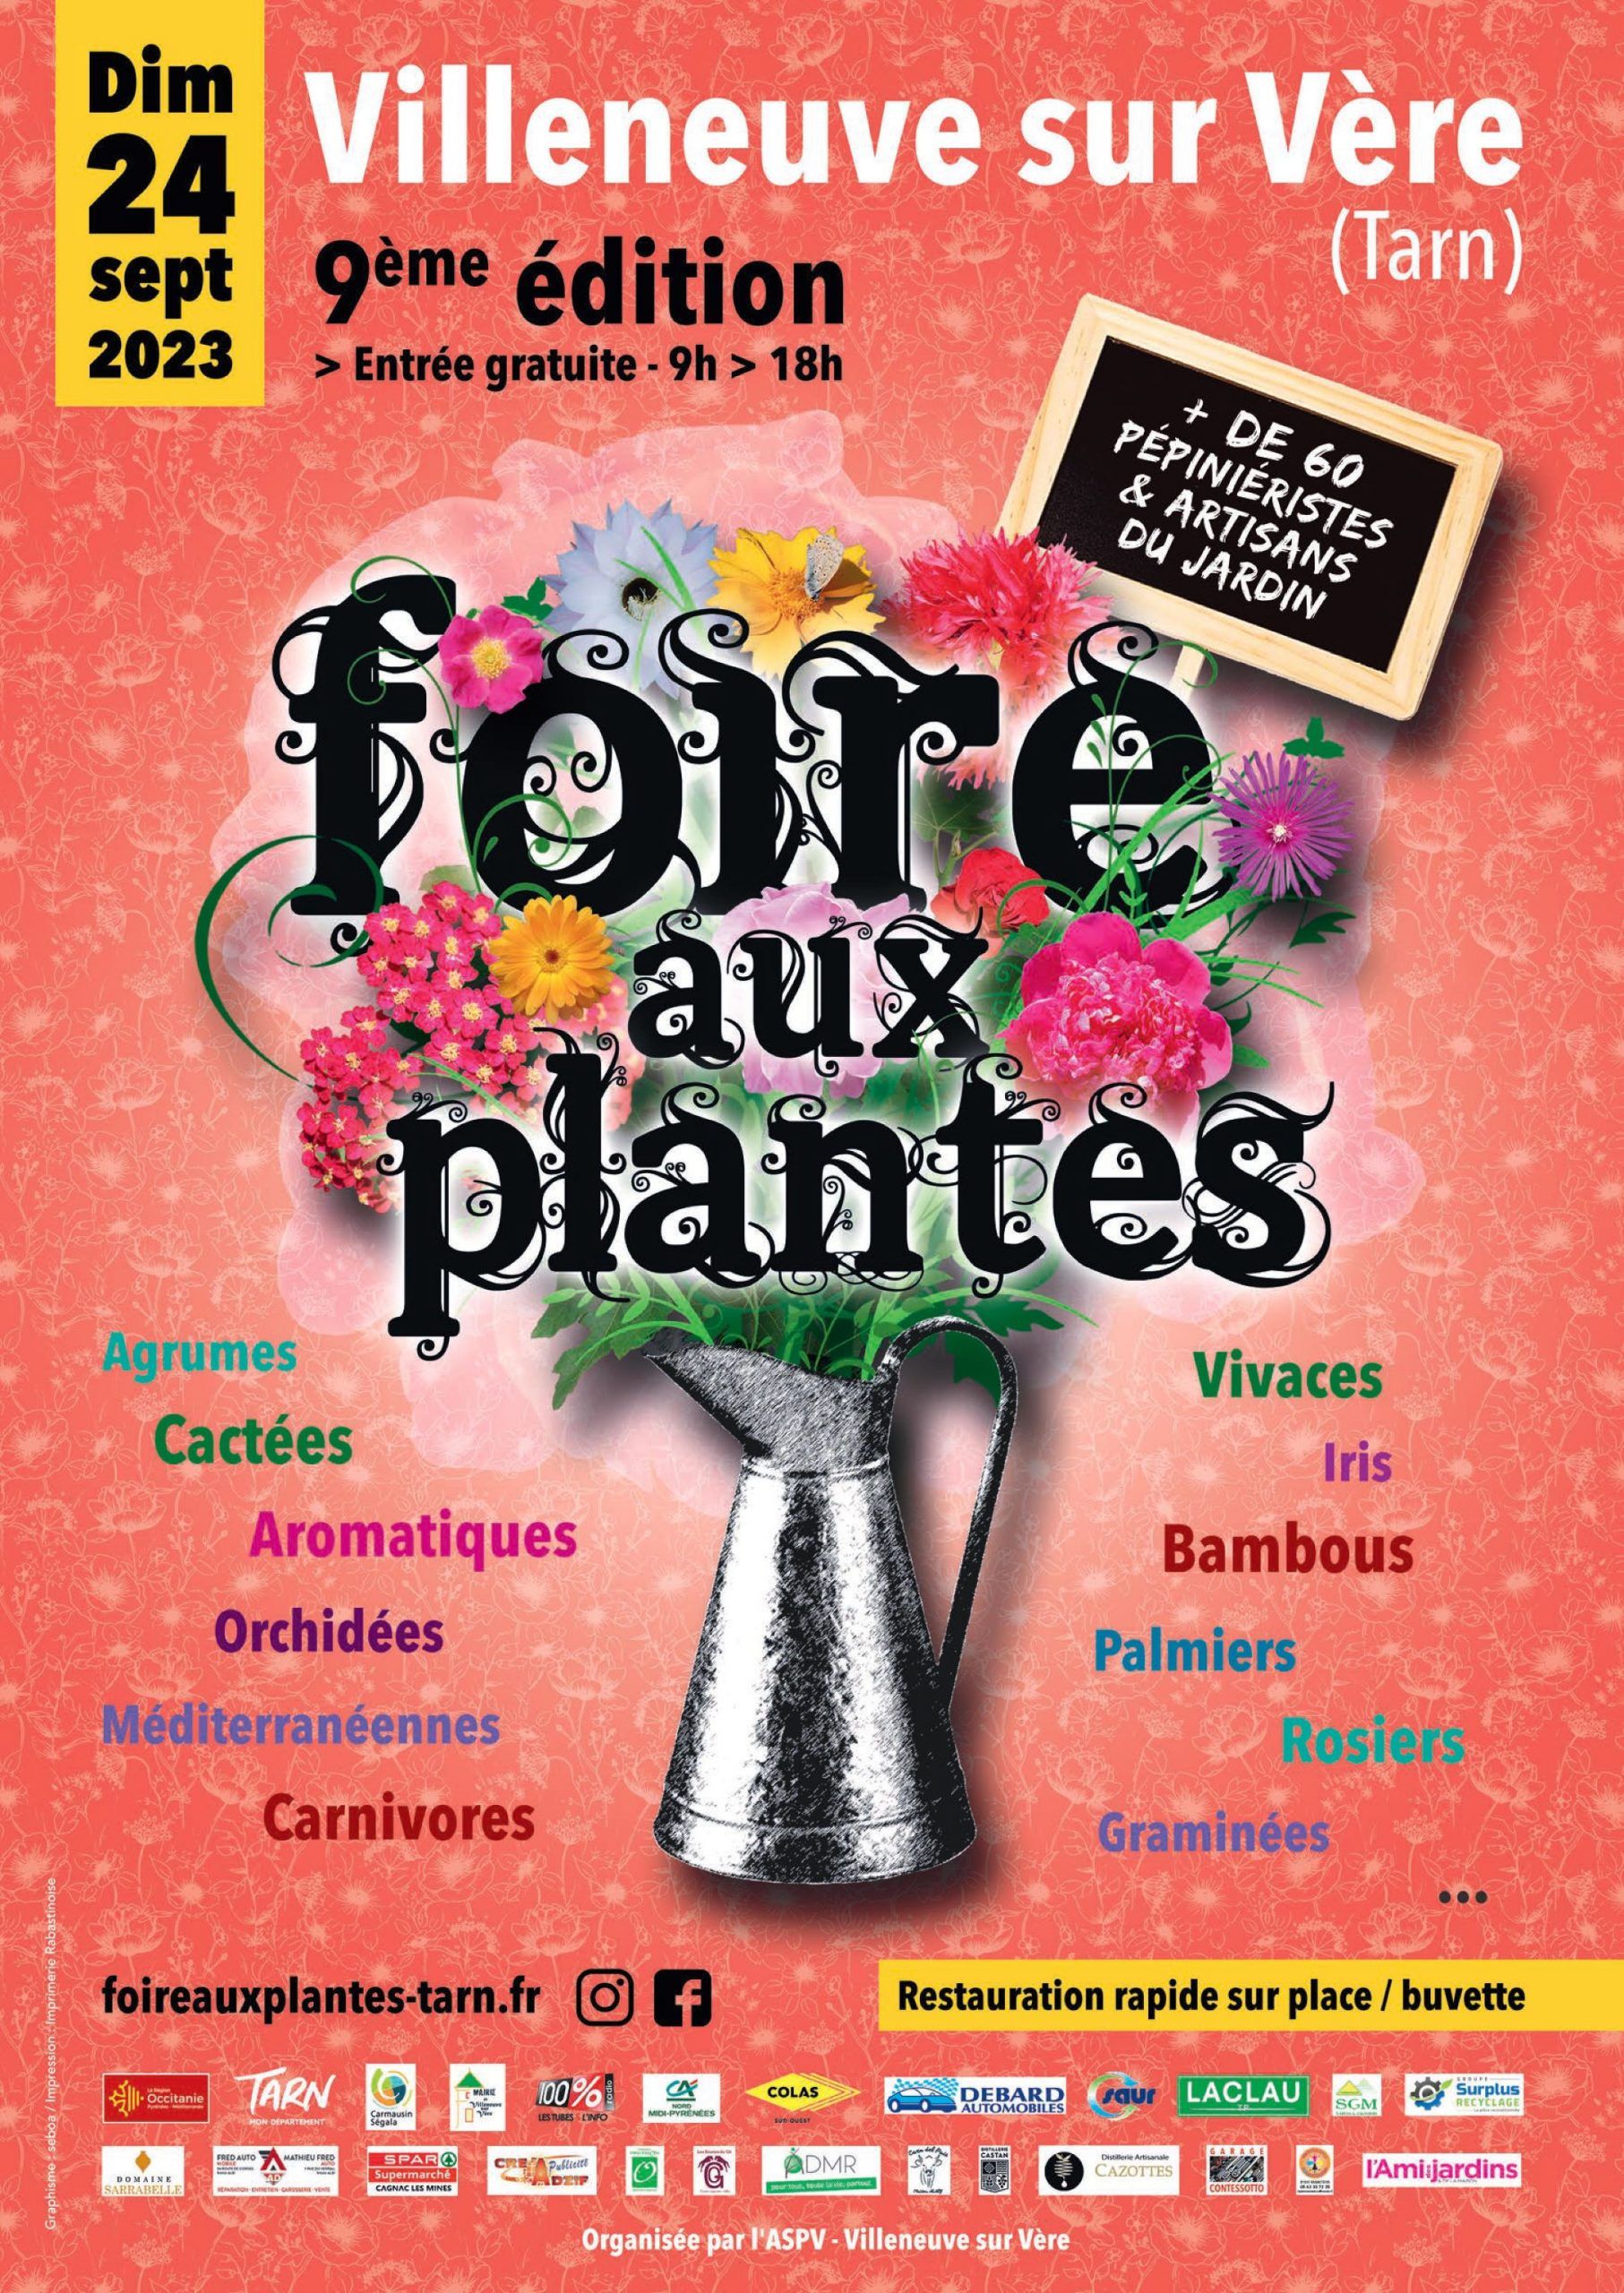 Foire aux plantes - Villeneuve sur Vère (Tarn)